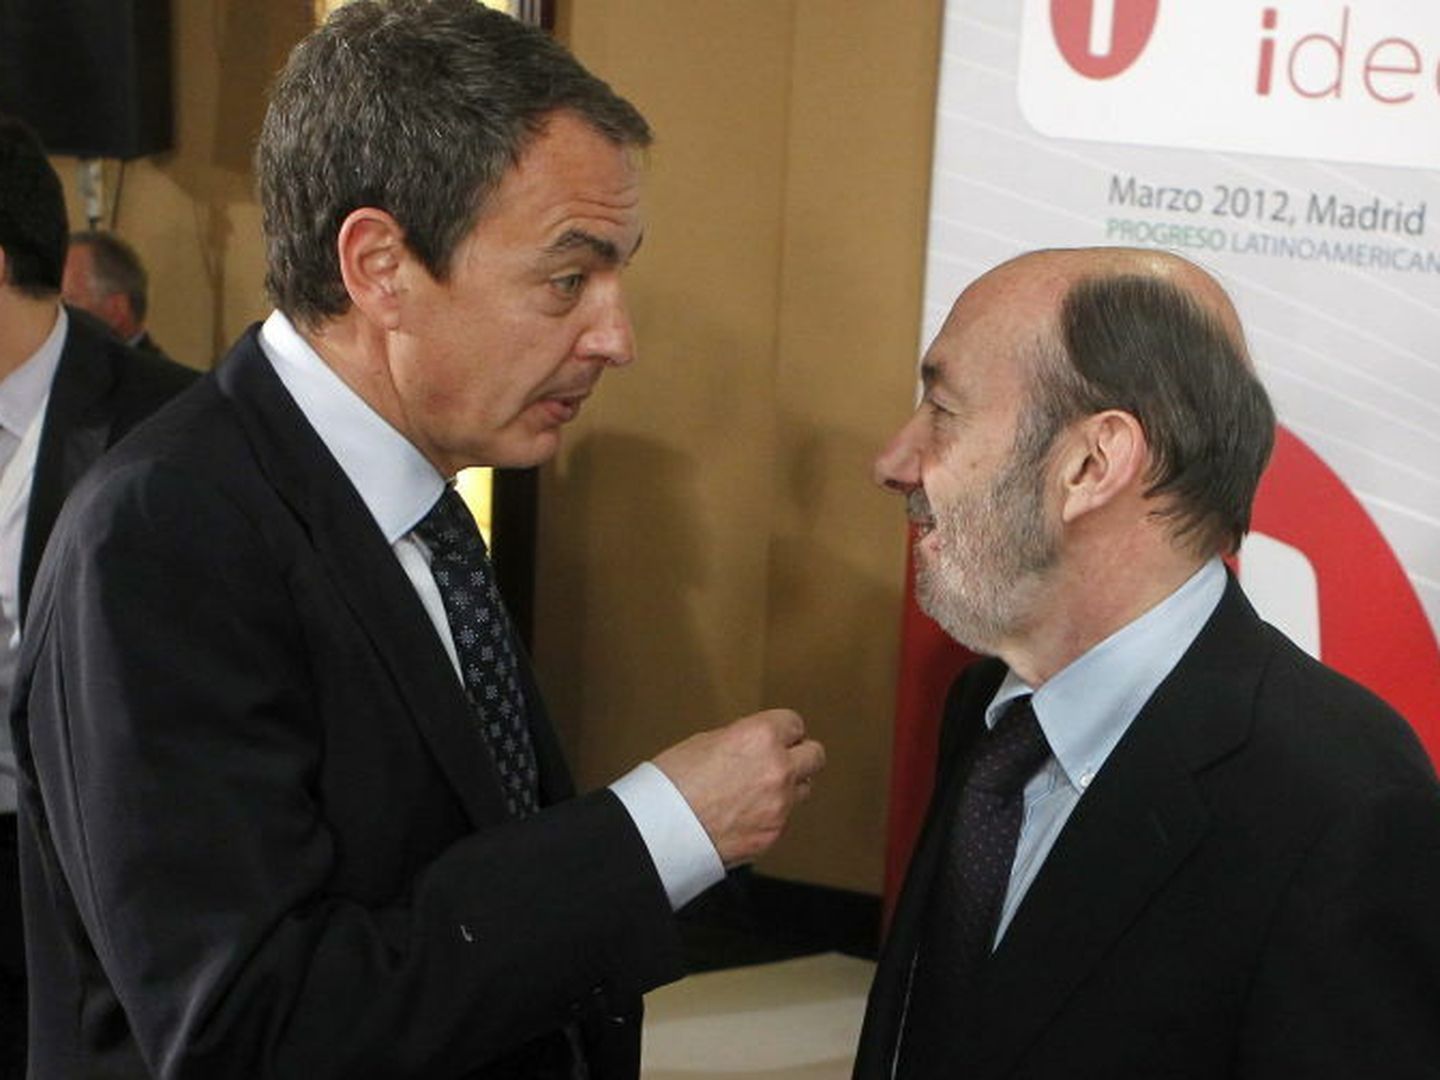 Zapatero y Rubalcaba, en una imagen de archivo. (EFE)